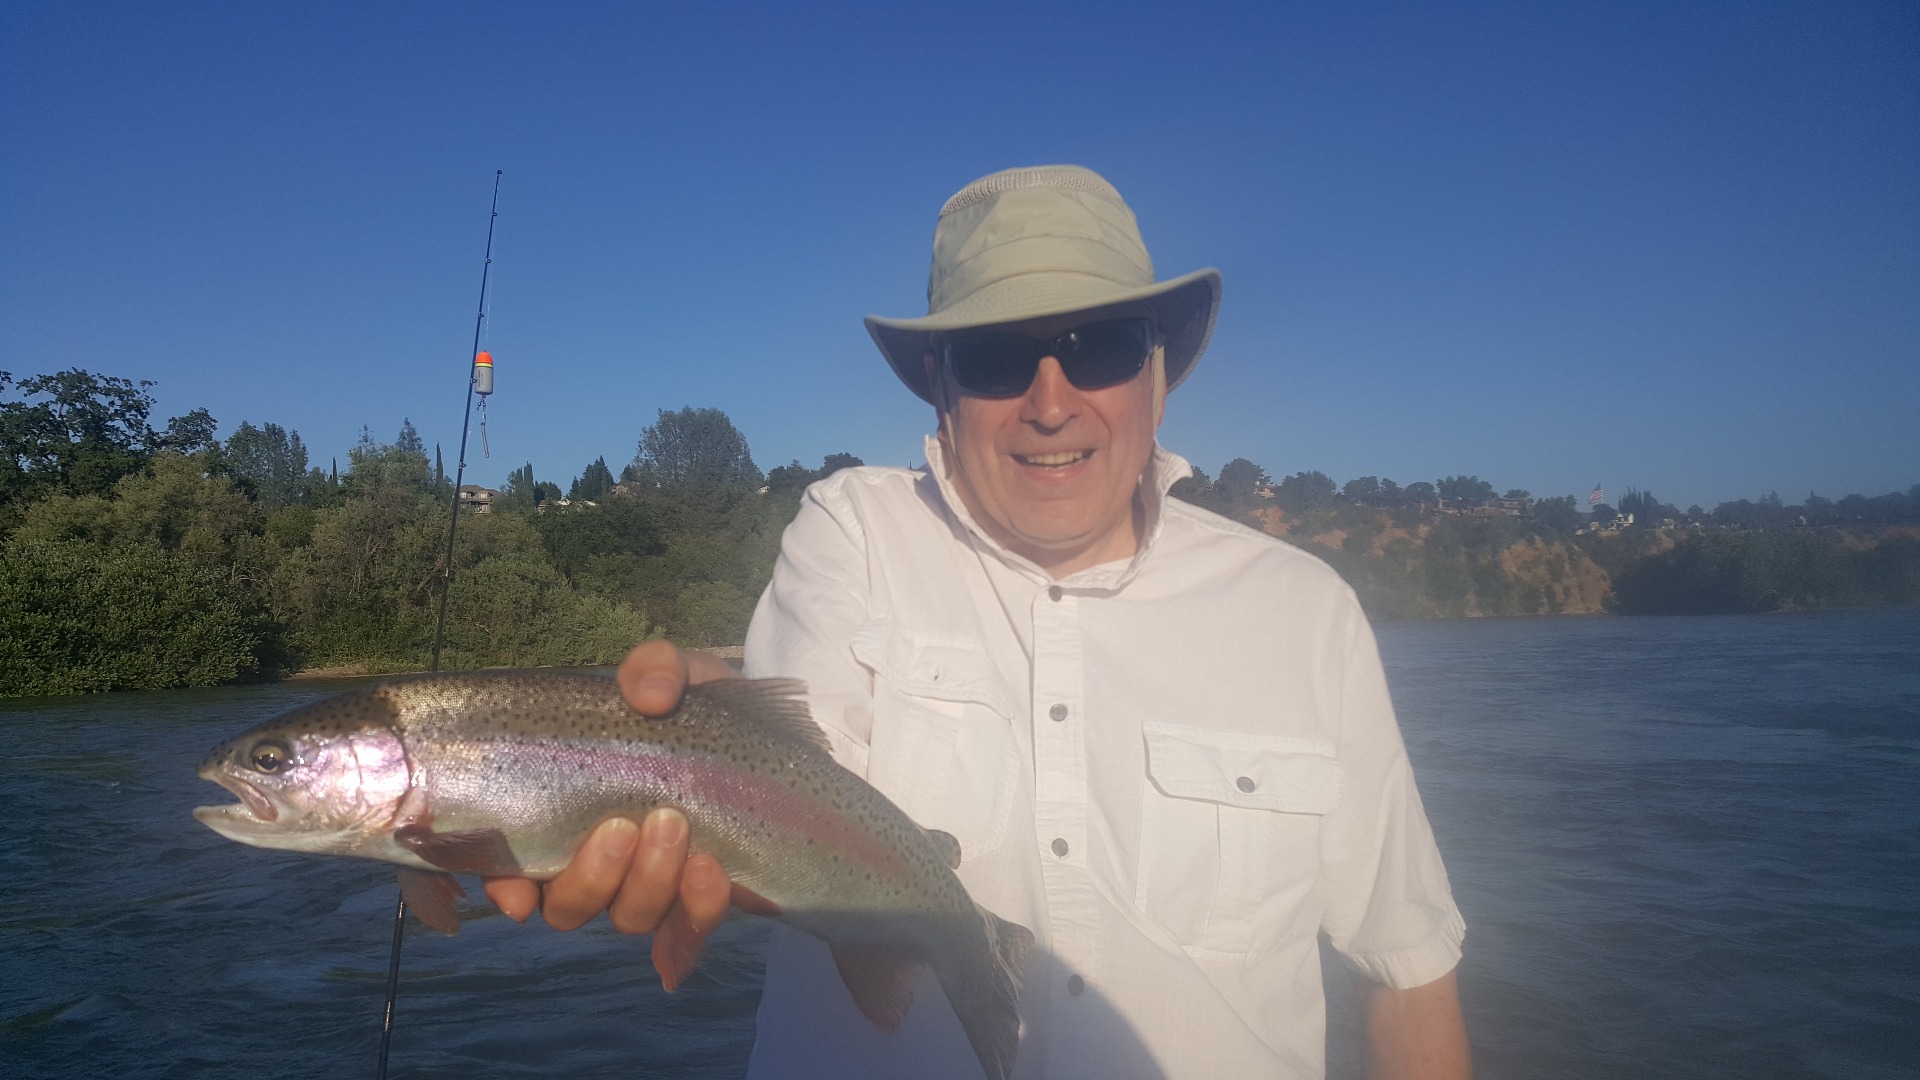 Wild rainbow fishing